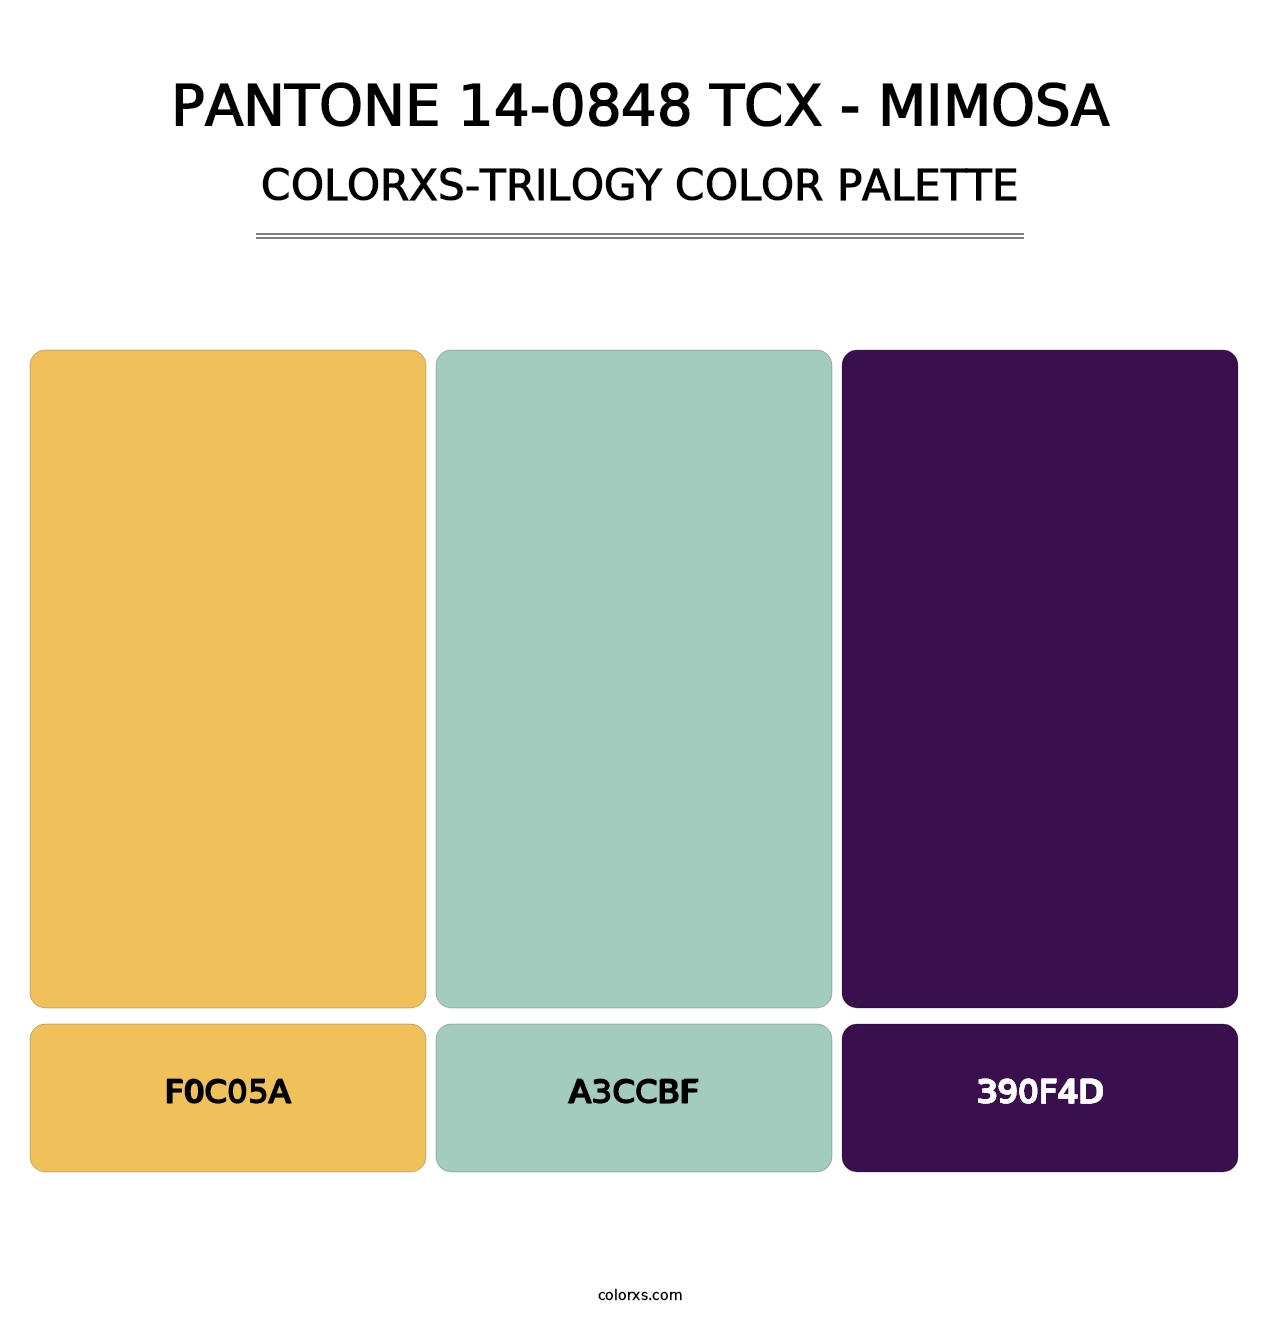 PANTONE 14-0848 TCX - Mimosa - Colorxs Trilogy Palette